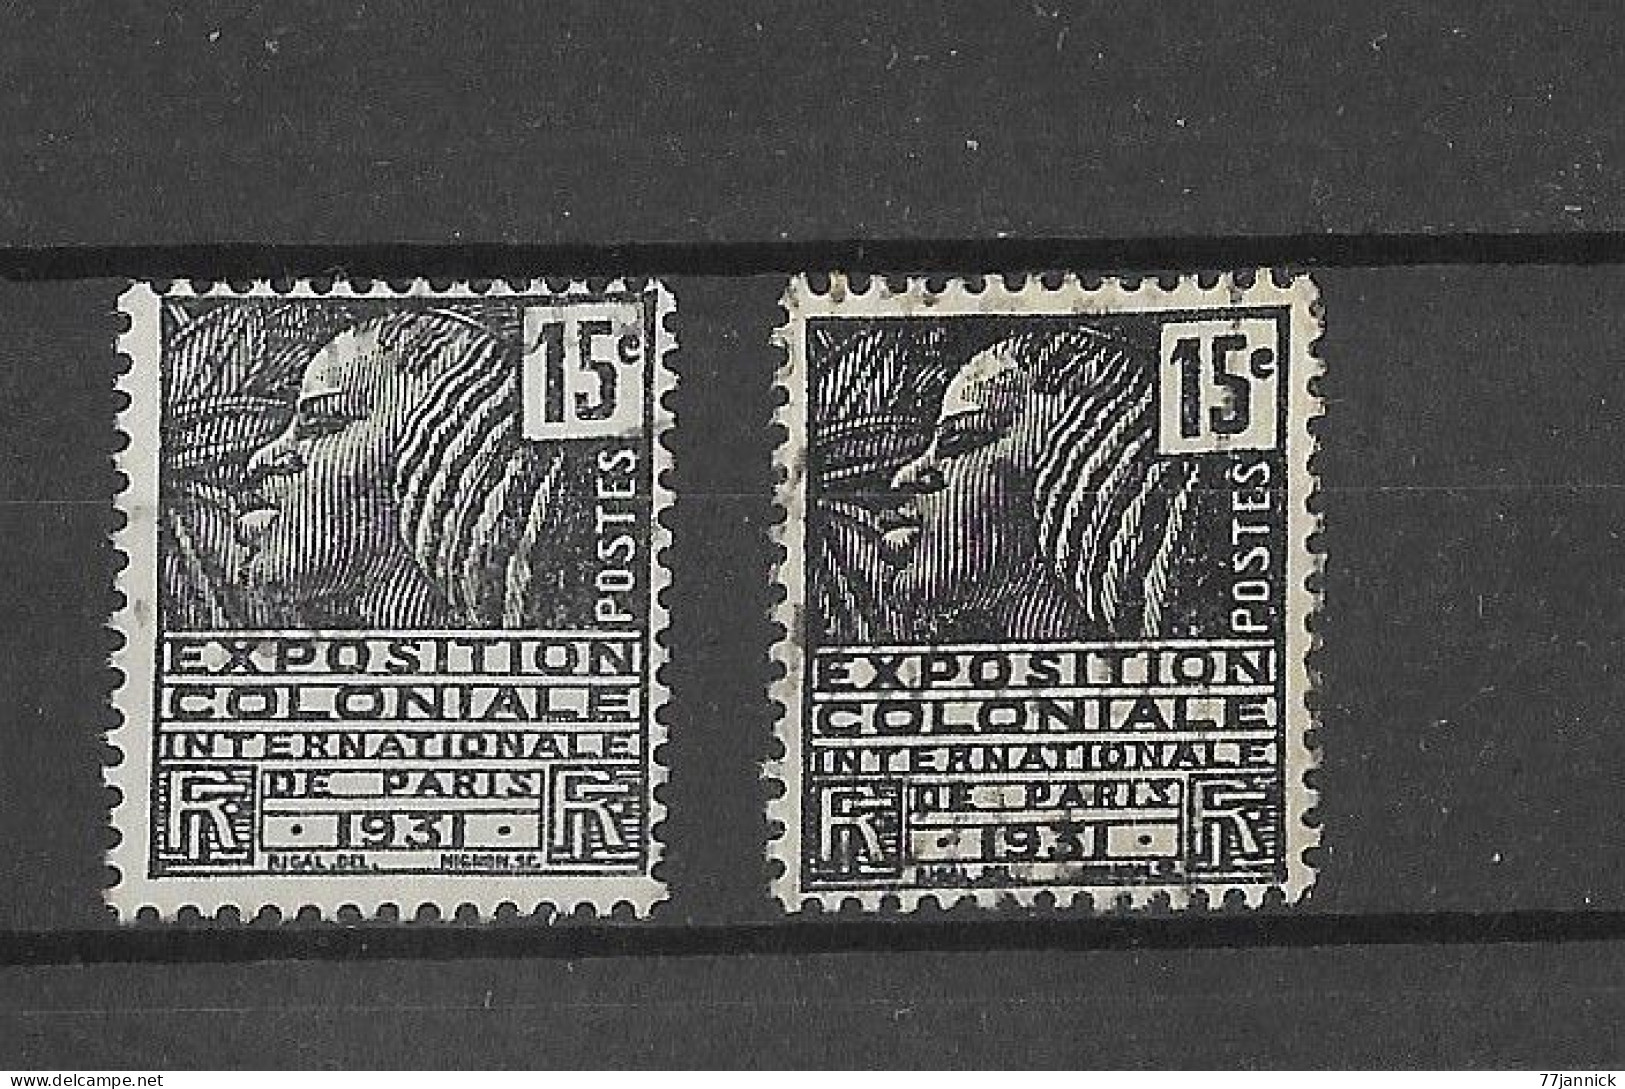 VARIETE DE COULEUR N° 270 (clair / Foncé)  OBLITERE - Used Stamps